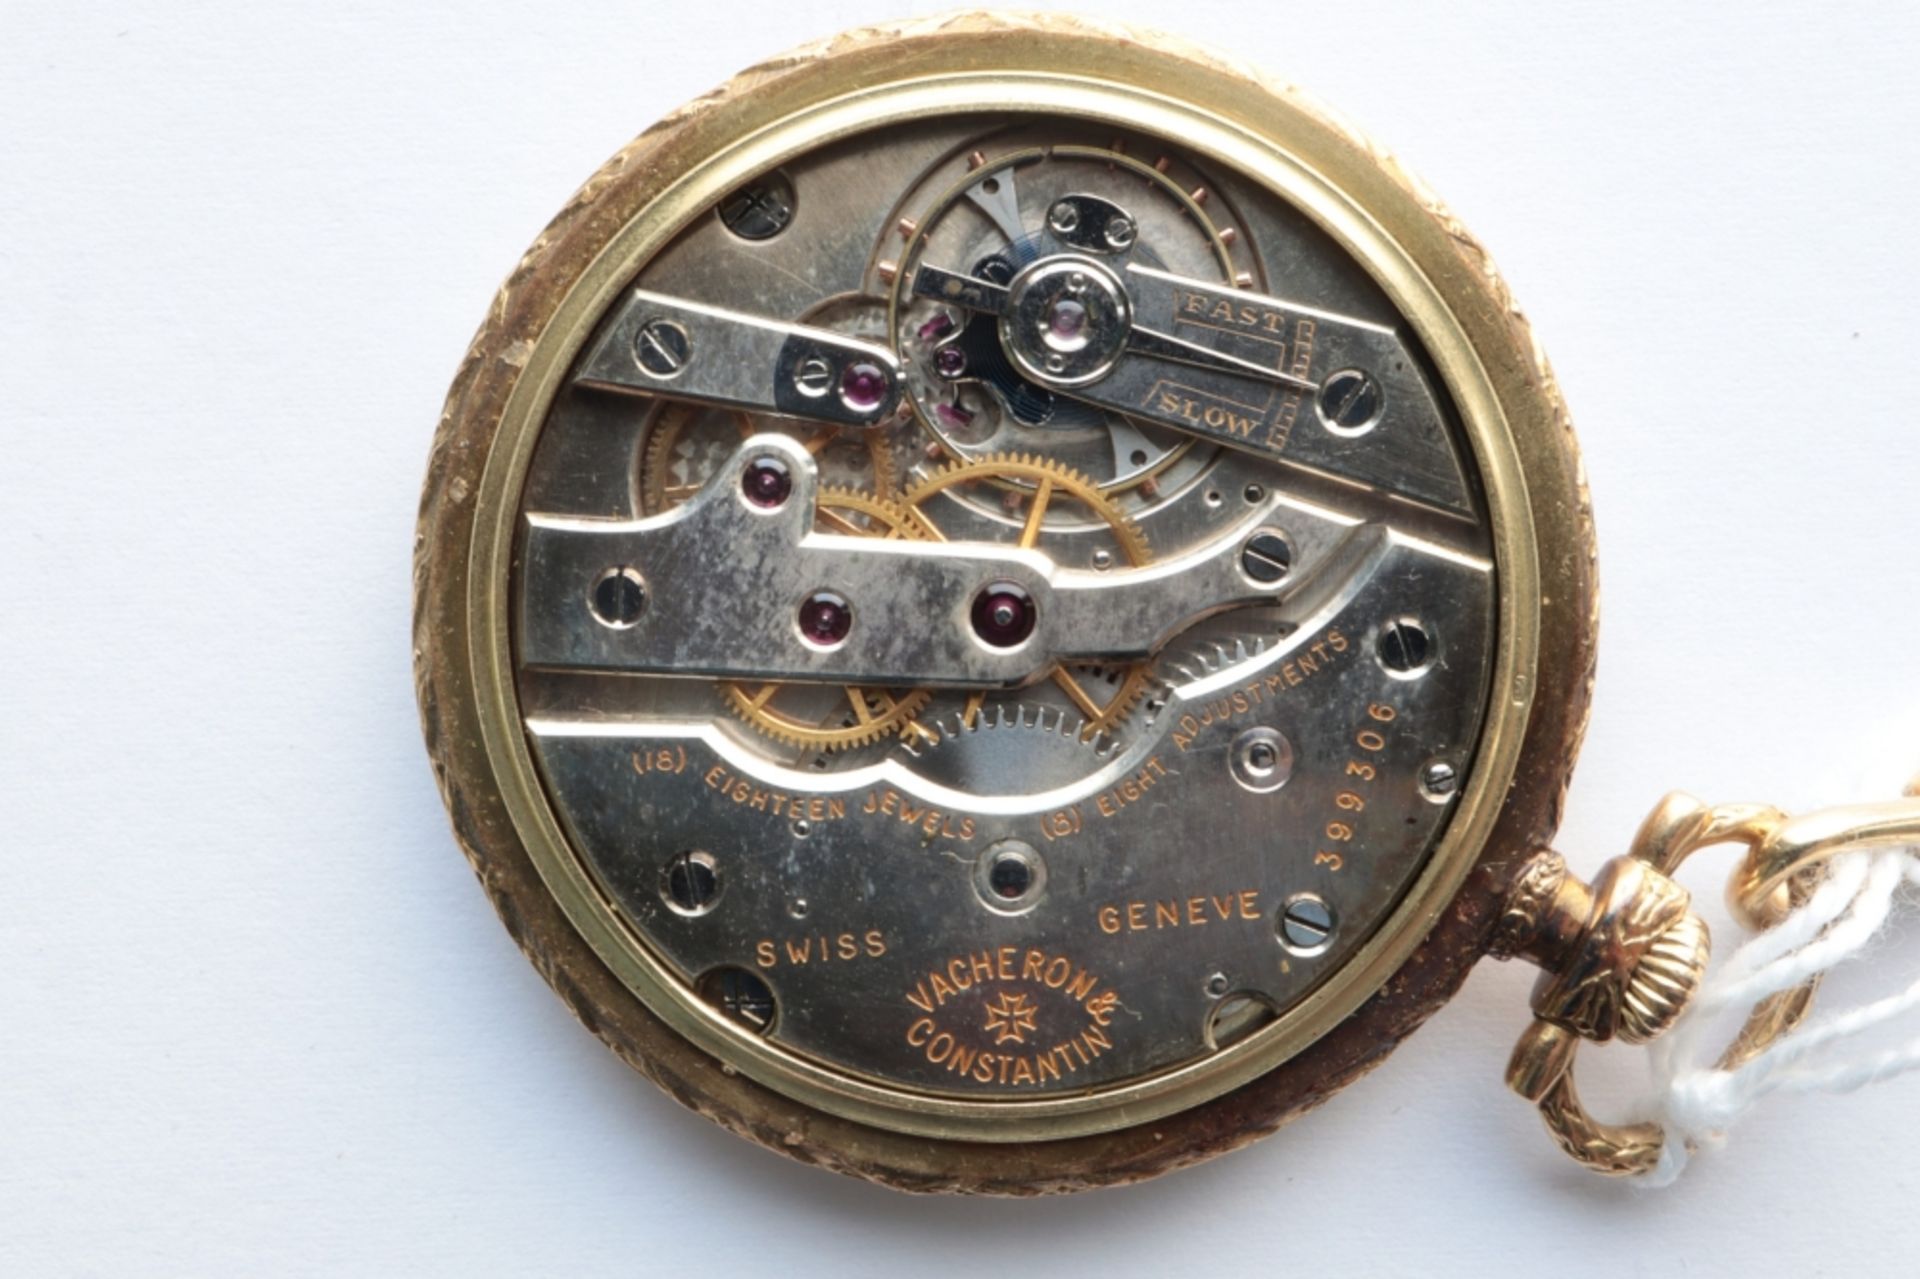 Vacheron Constantin Vacheron Constantin chronometer pocket watch and chain SWITZERLAND 18k gold - Bild 3 aus 3